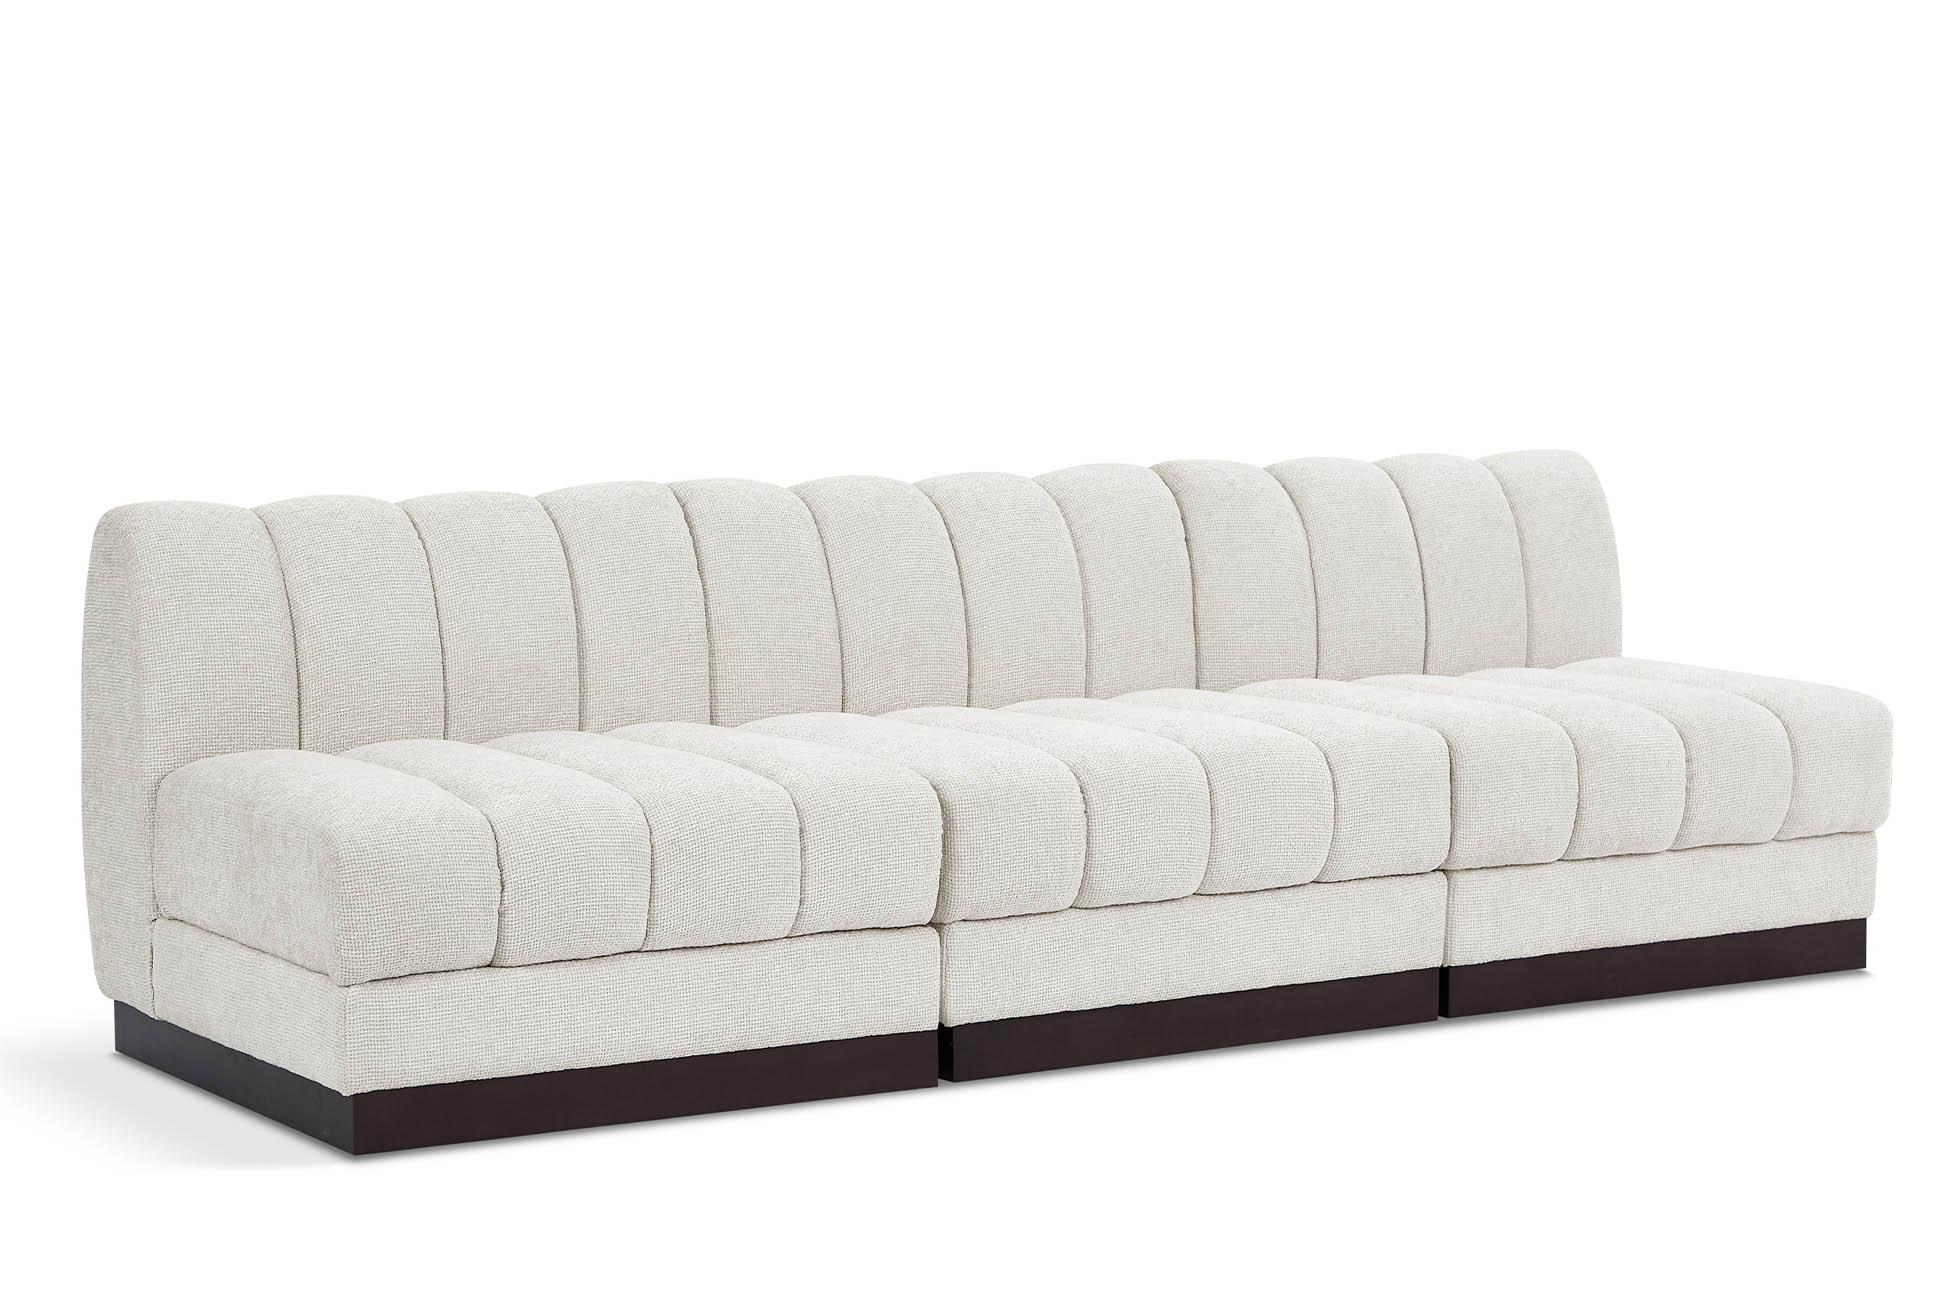 Contemporary, Modern Modular Sofa QUINN 124Cream-S96 124Cream-S96 in Cream Chenille